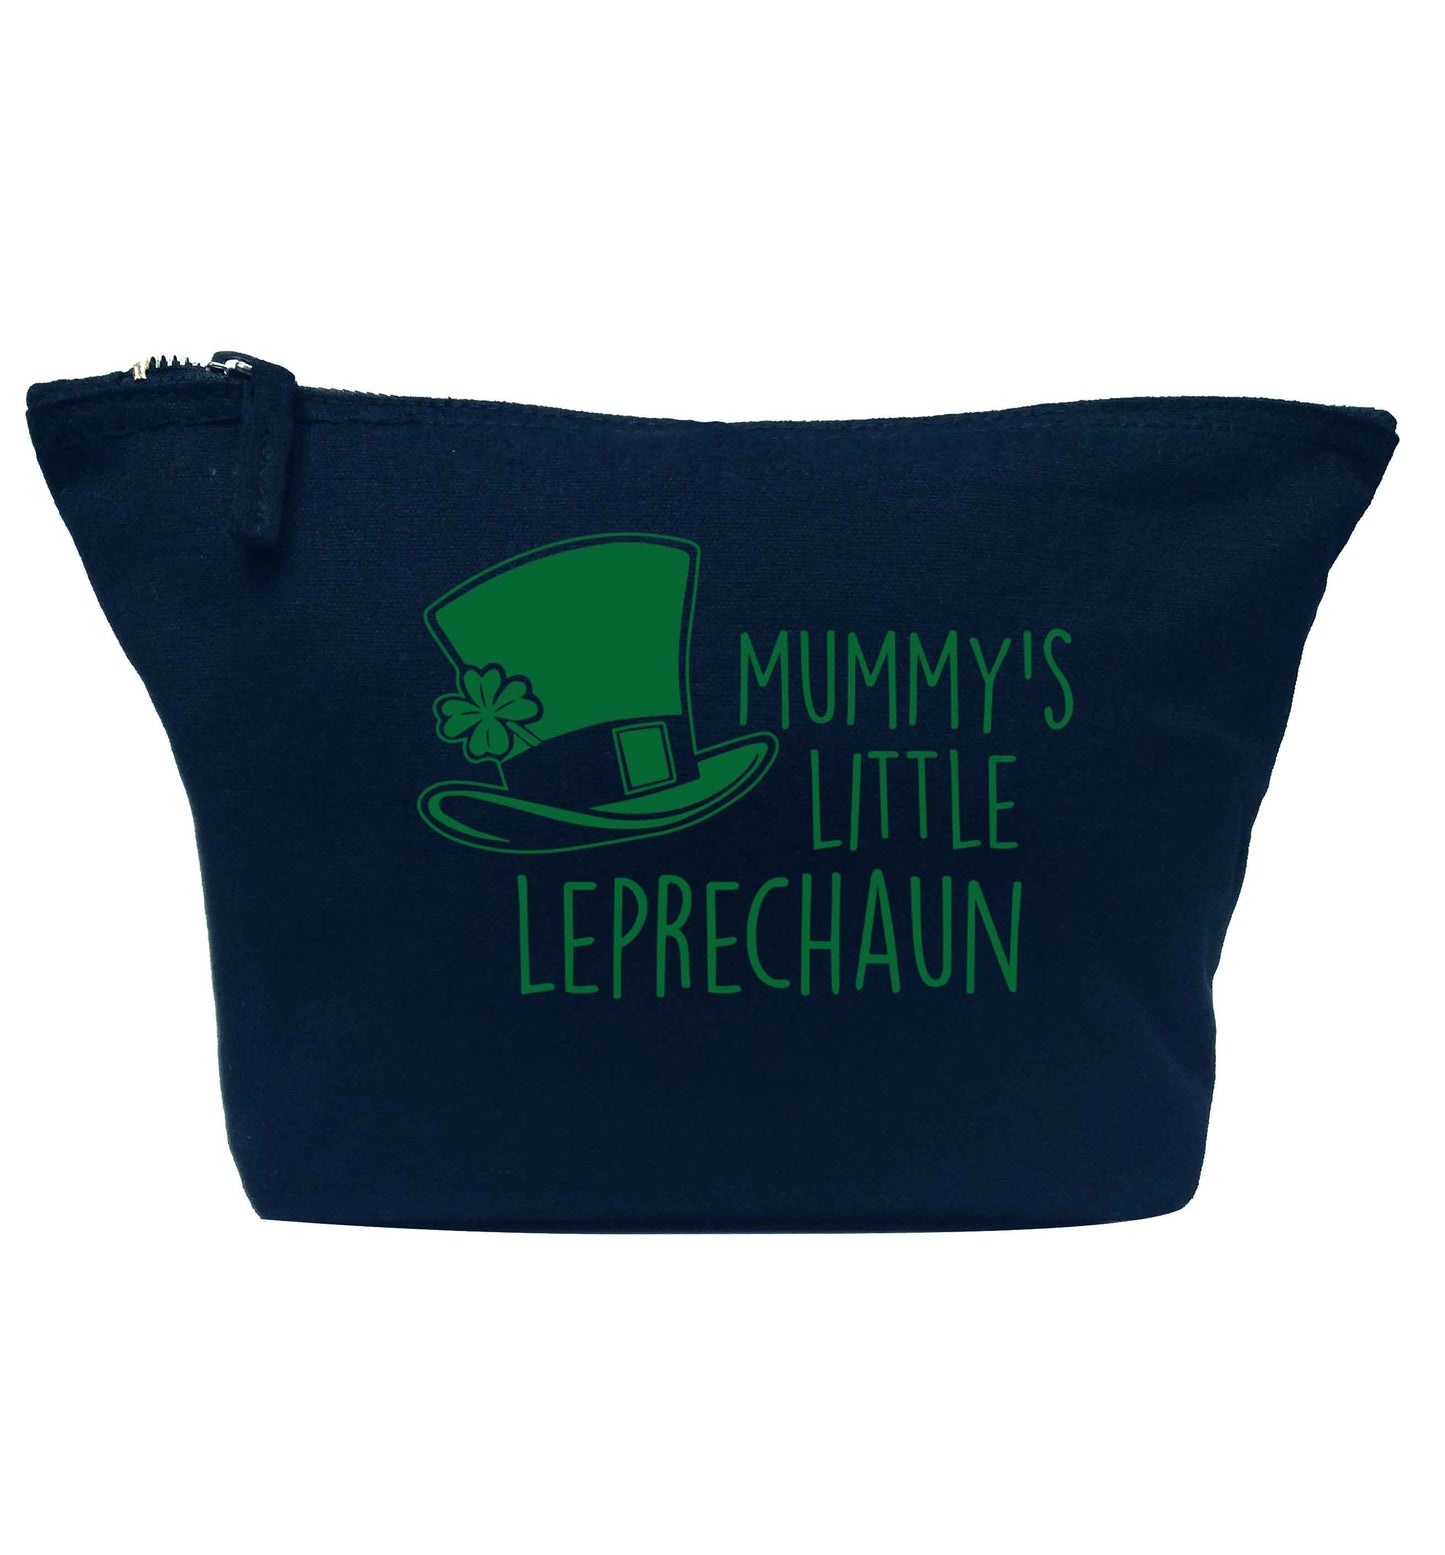 Mummy's little leprechaun navy makeup bag